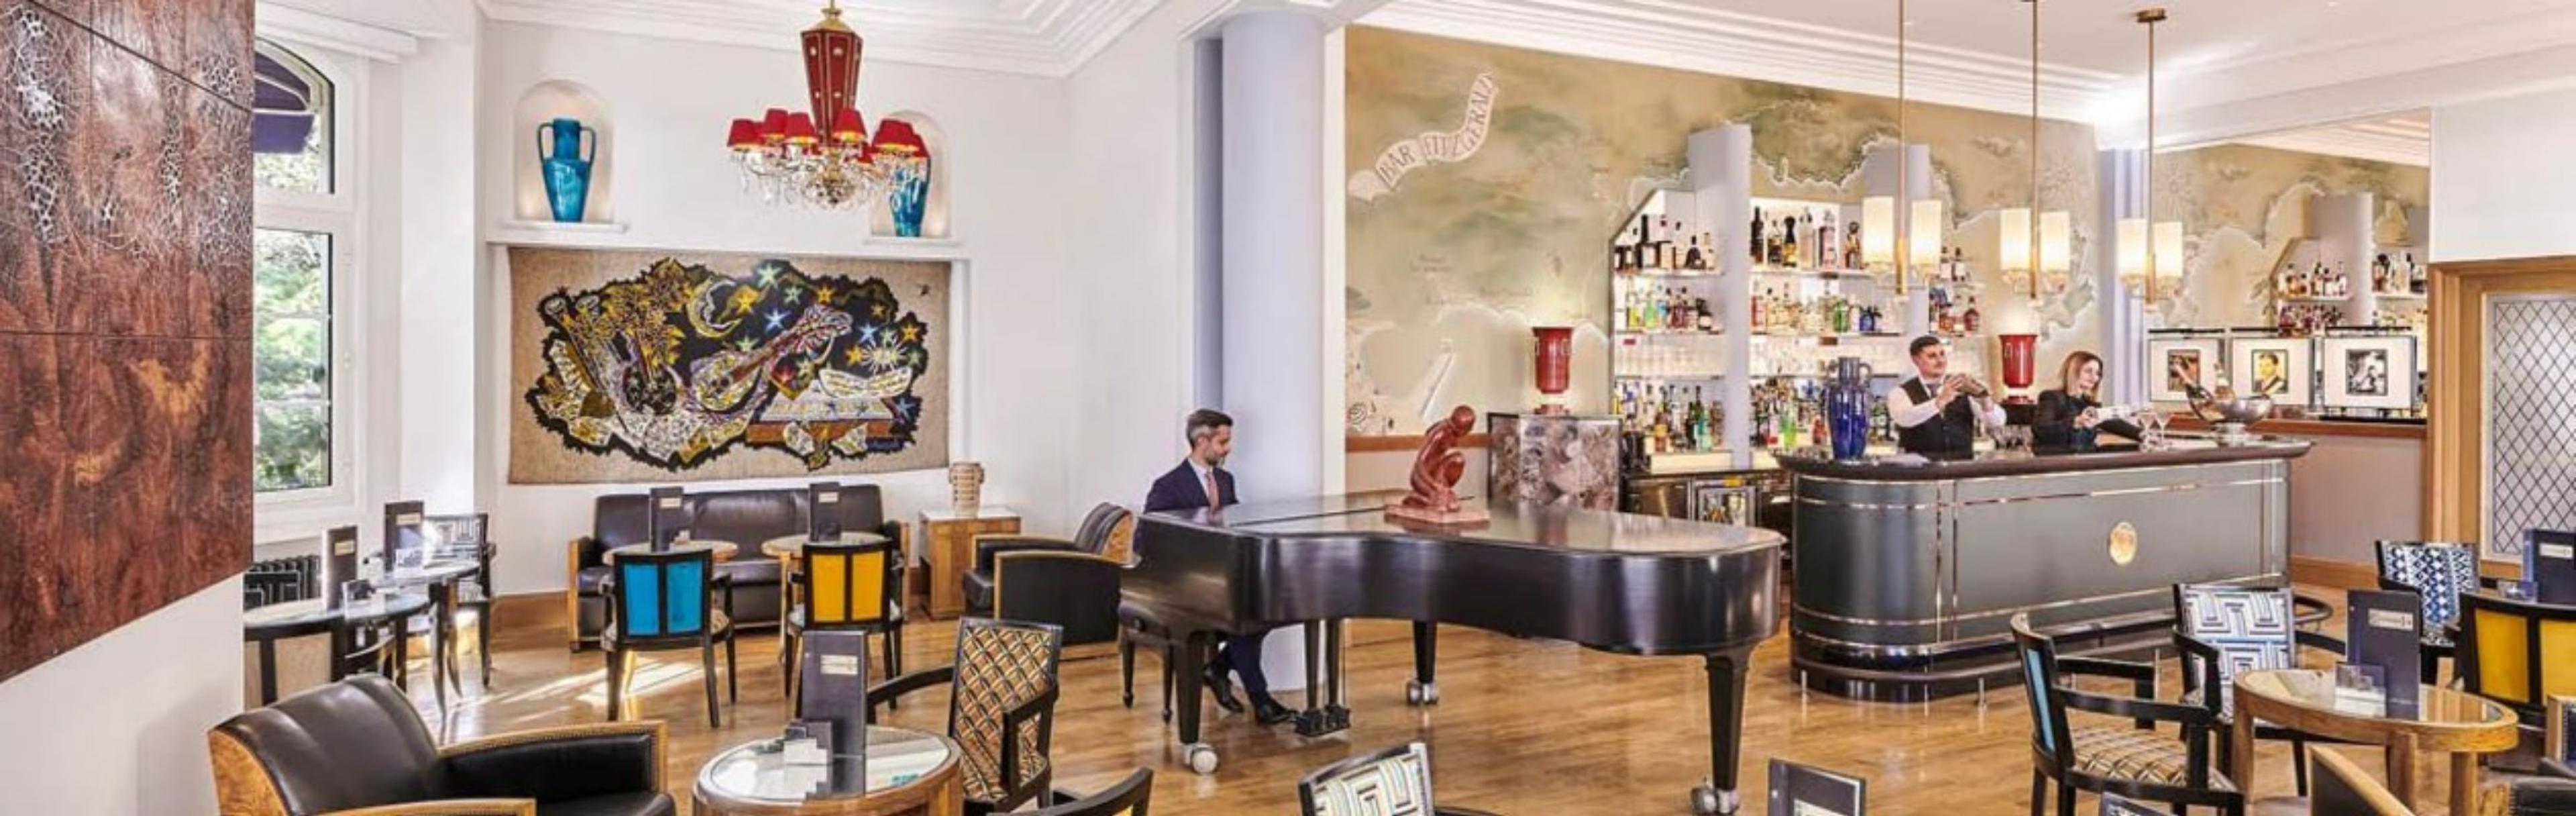 Piano Bar Fitzgerald